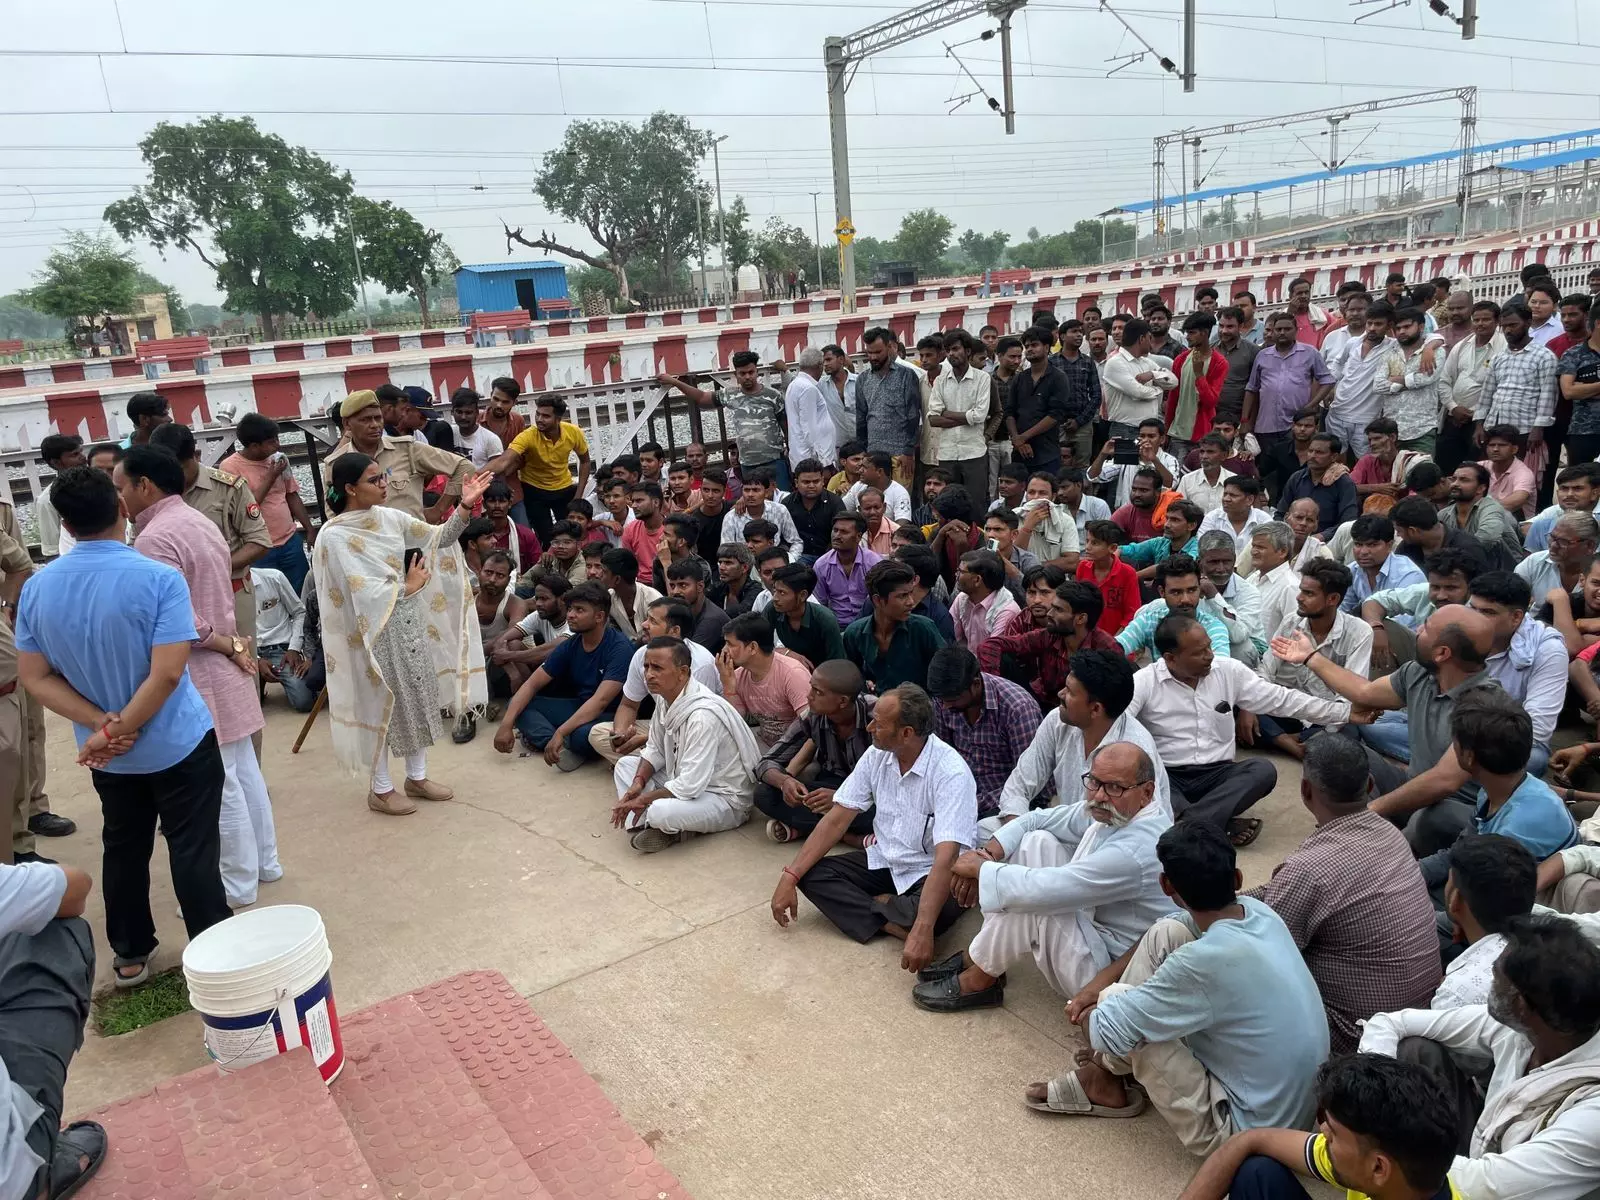 ट्रेन के ठहराव की मांग को लेकर जाजऊ स्टेशन पर ग्रामीणों का धरना, रेलवे अधिकारी ने दिखाया स्वीकृत प्रस्ताव